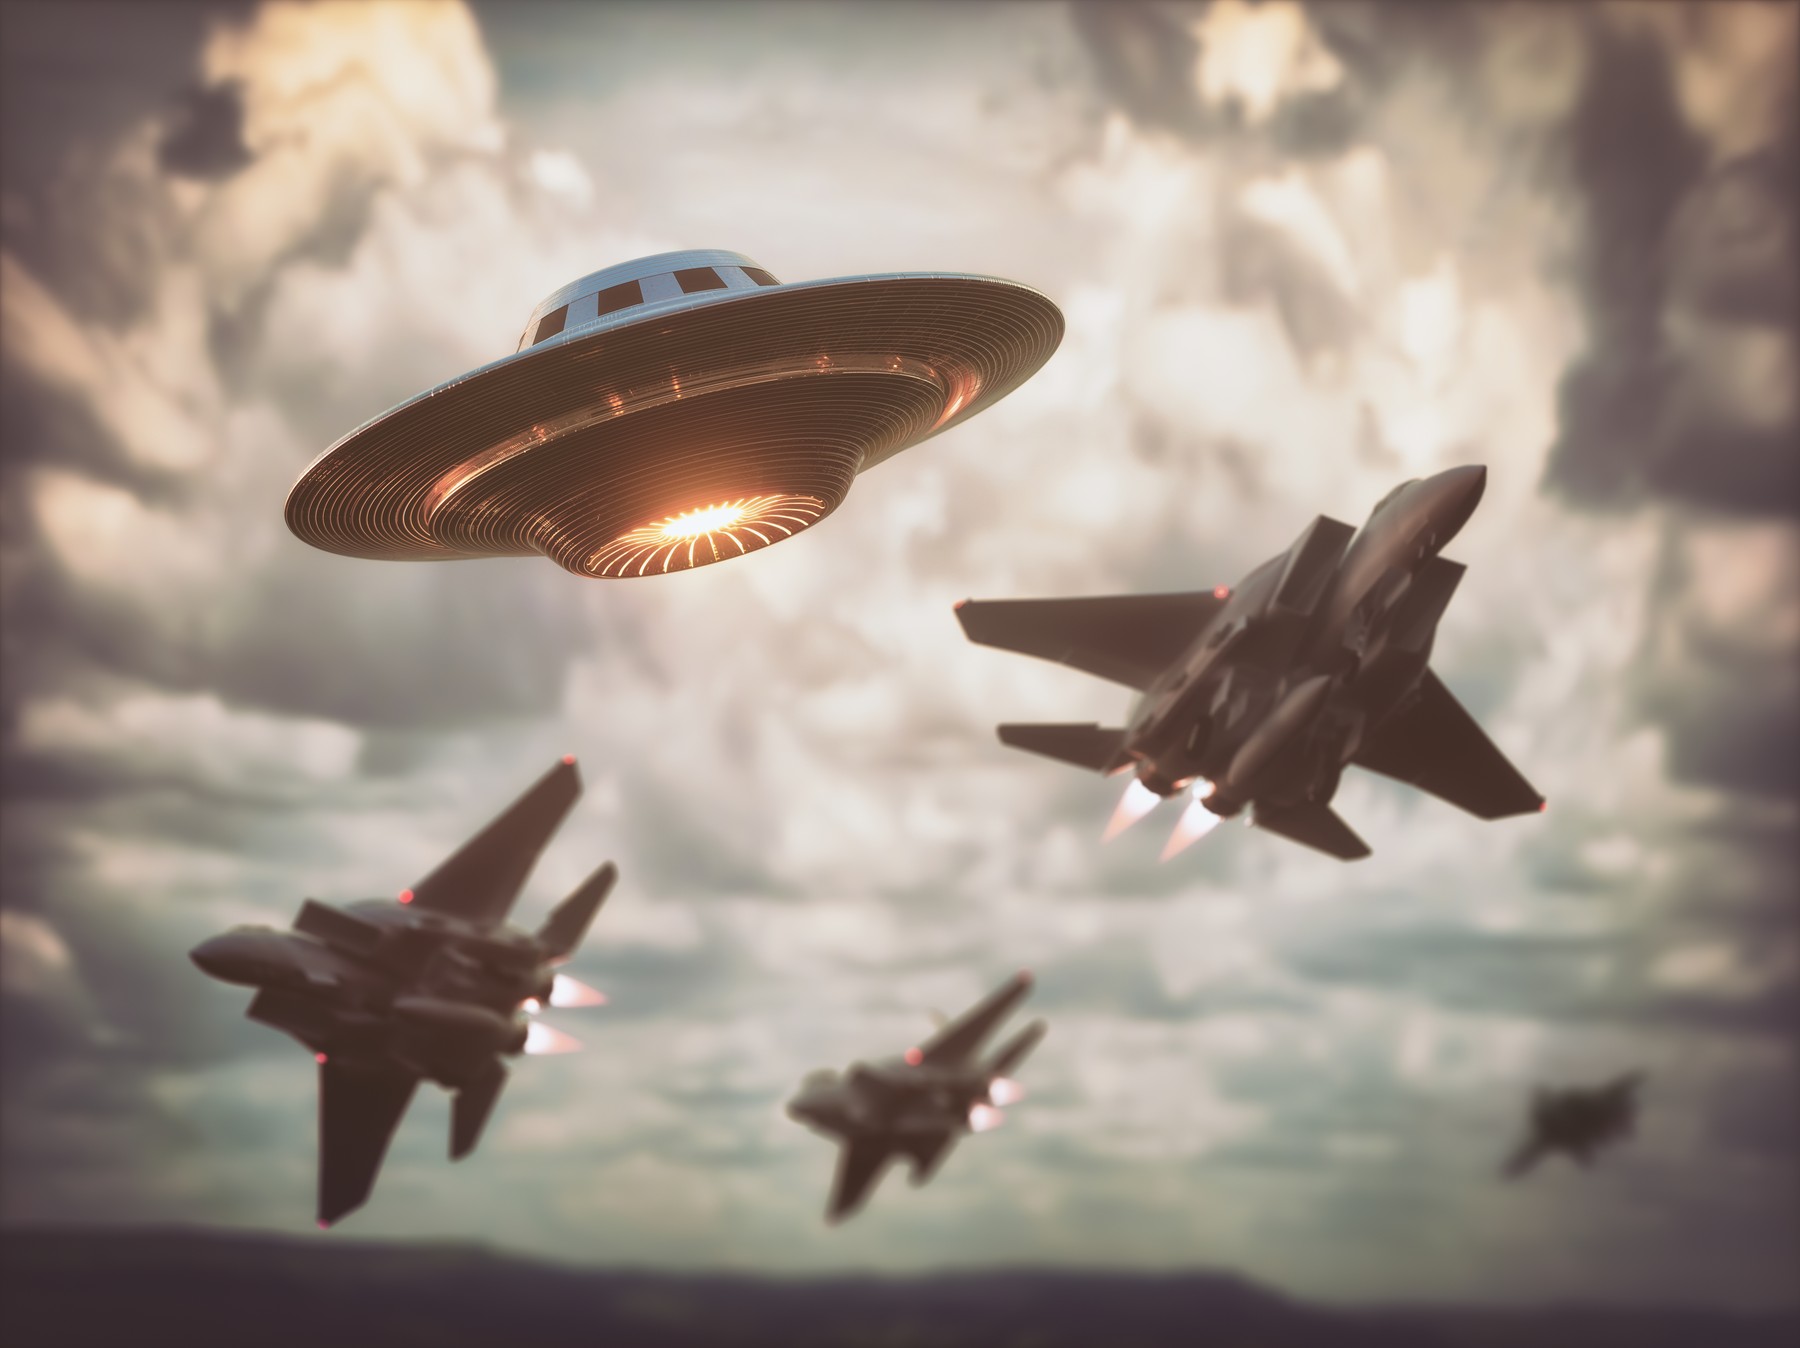 UFO-t lőttek le az amerikaiak? A hadsereg titkolózik a Kanada felett megsemmisített azonosítatlan légi eszközről